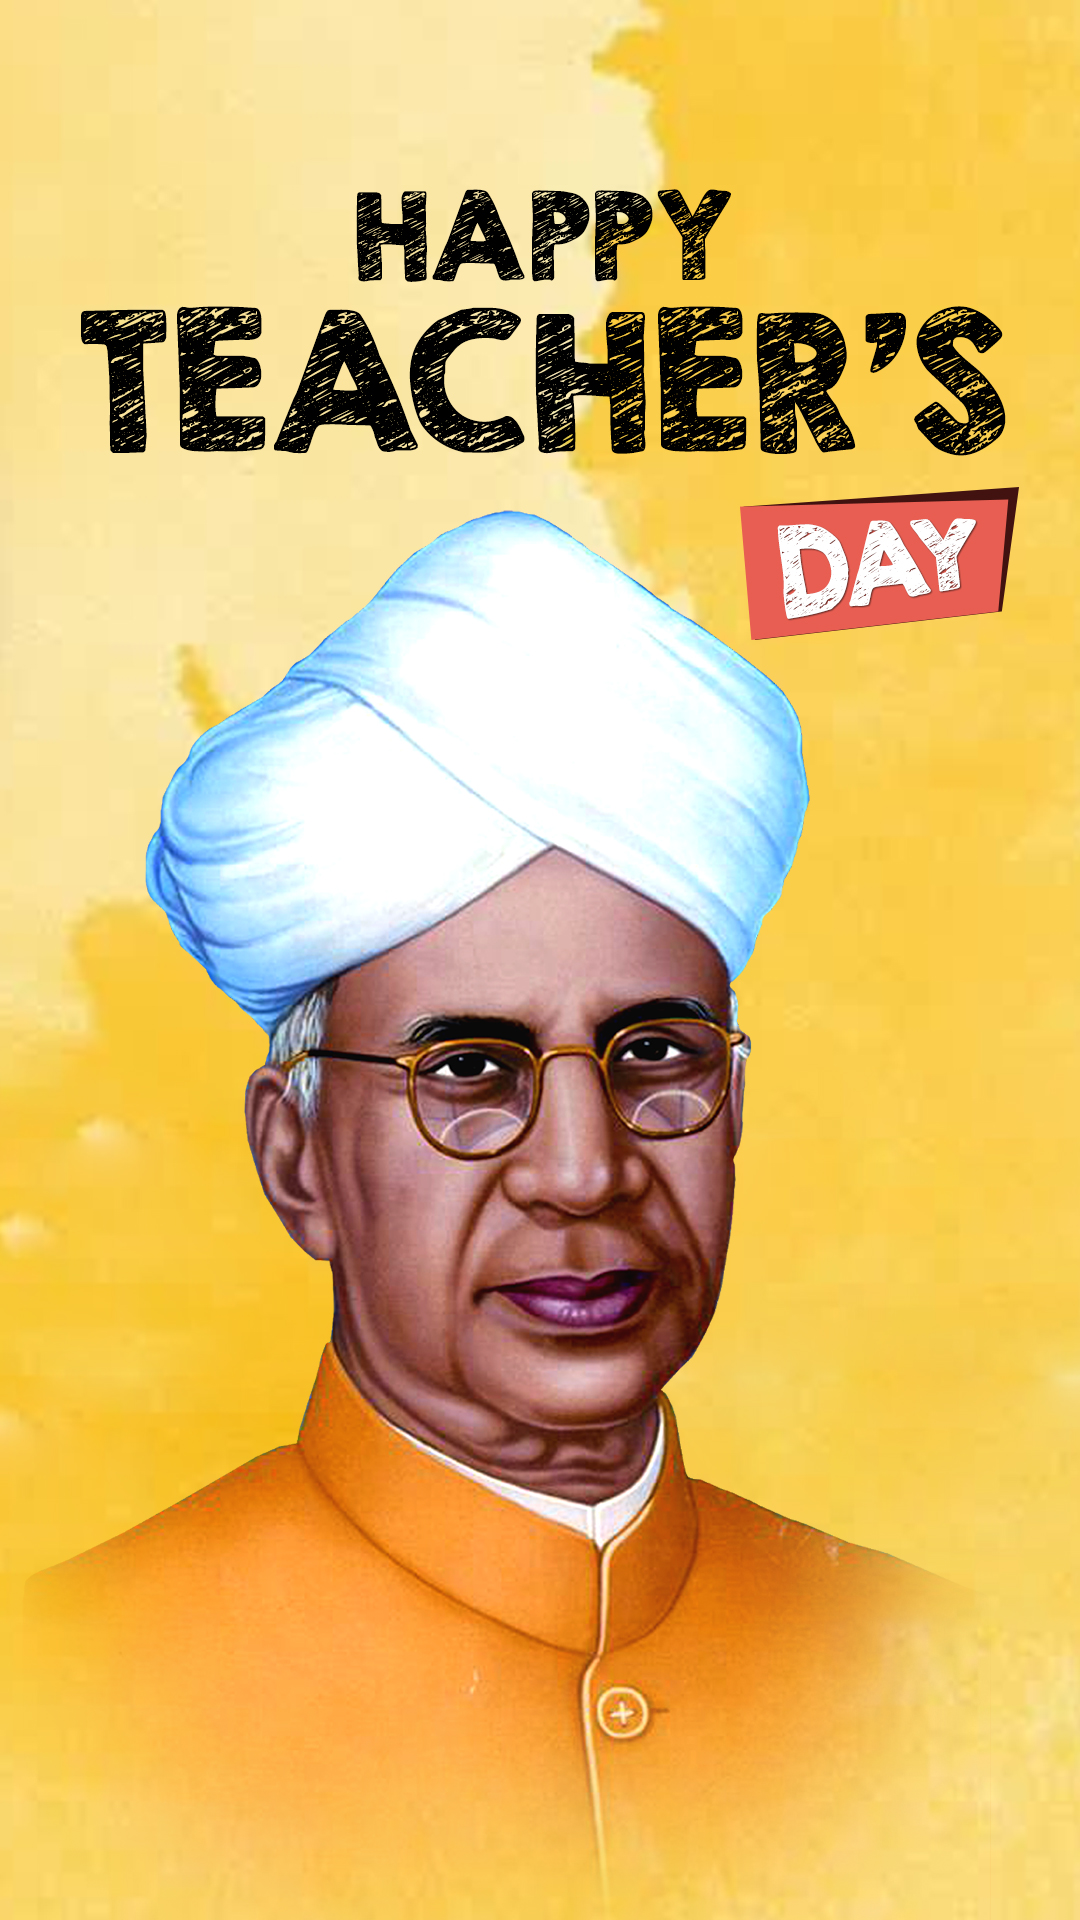 Teachers Day Quotes In Hindi : टीचर्स डे पर शेयर करें ये कोट्स और शिक्षकों को दें सम्मान